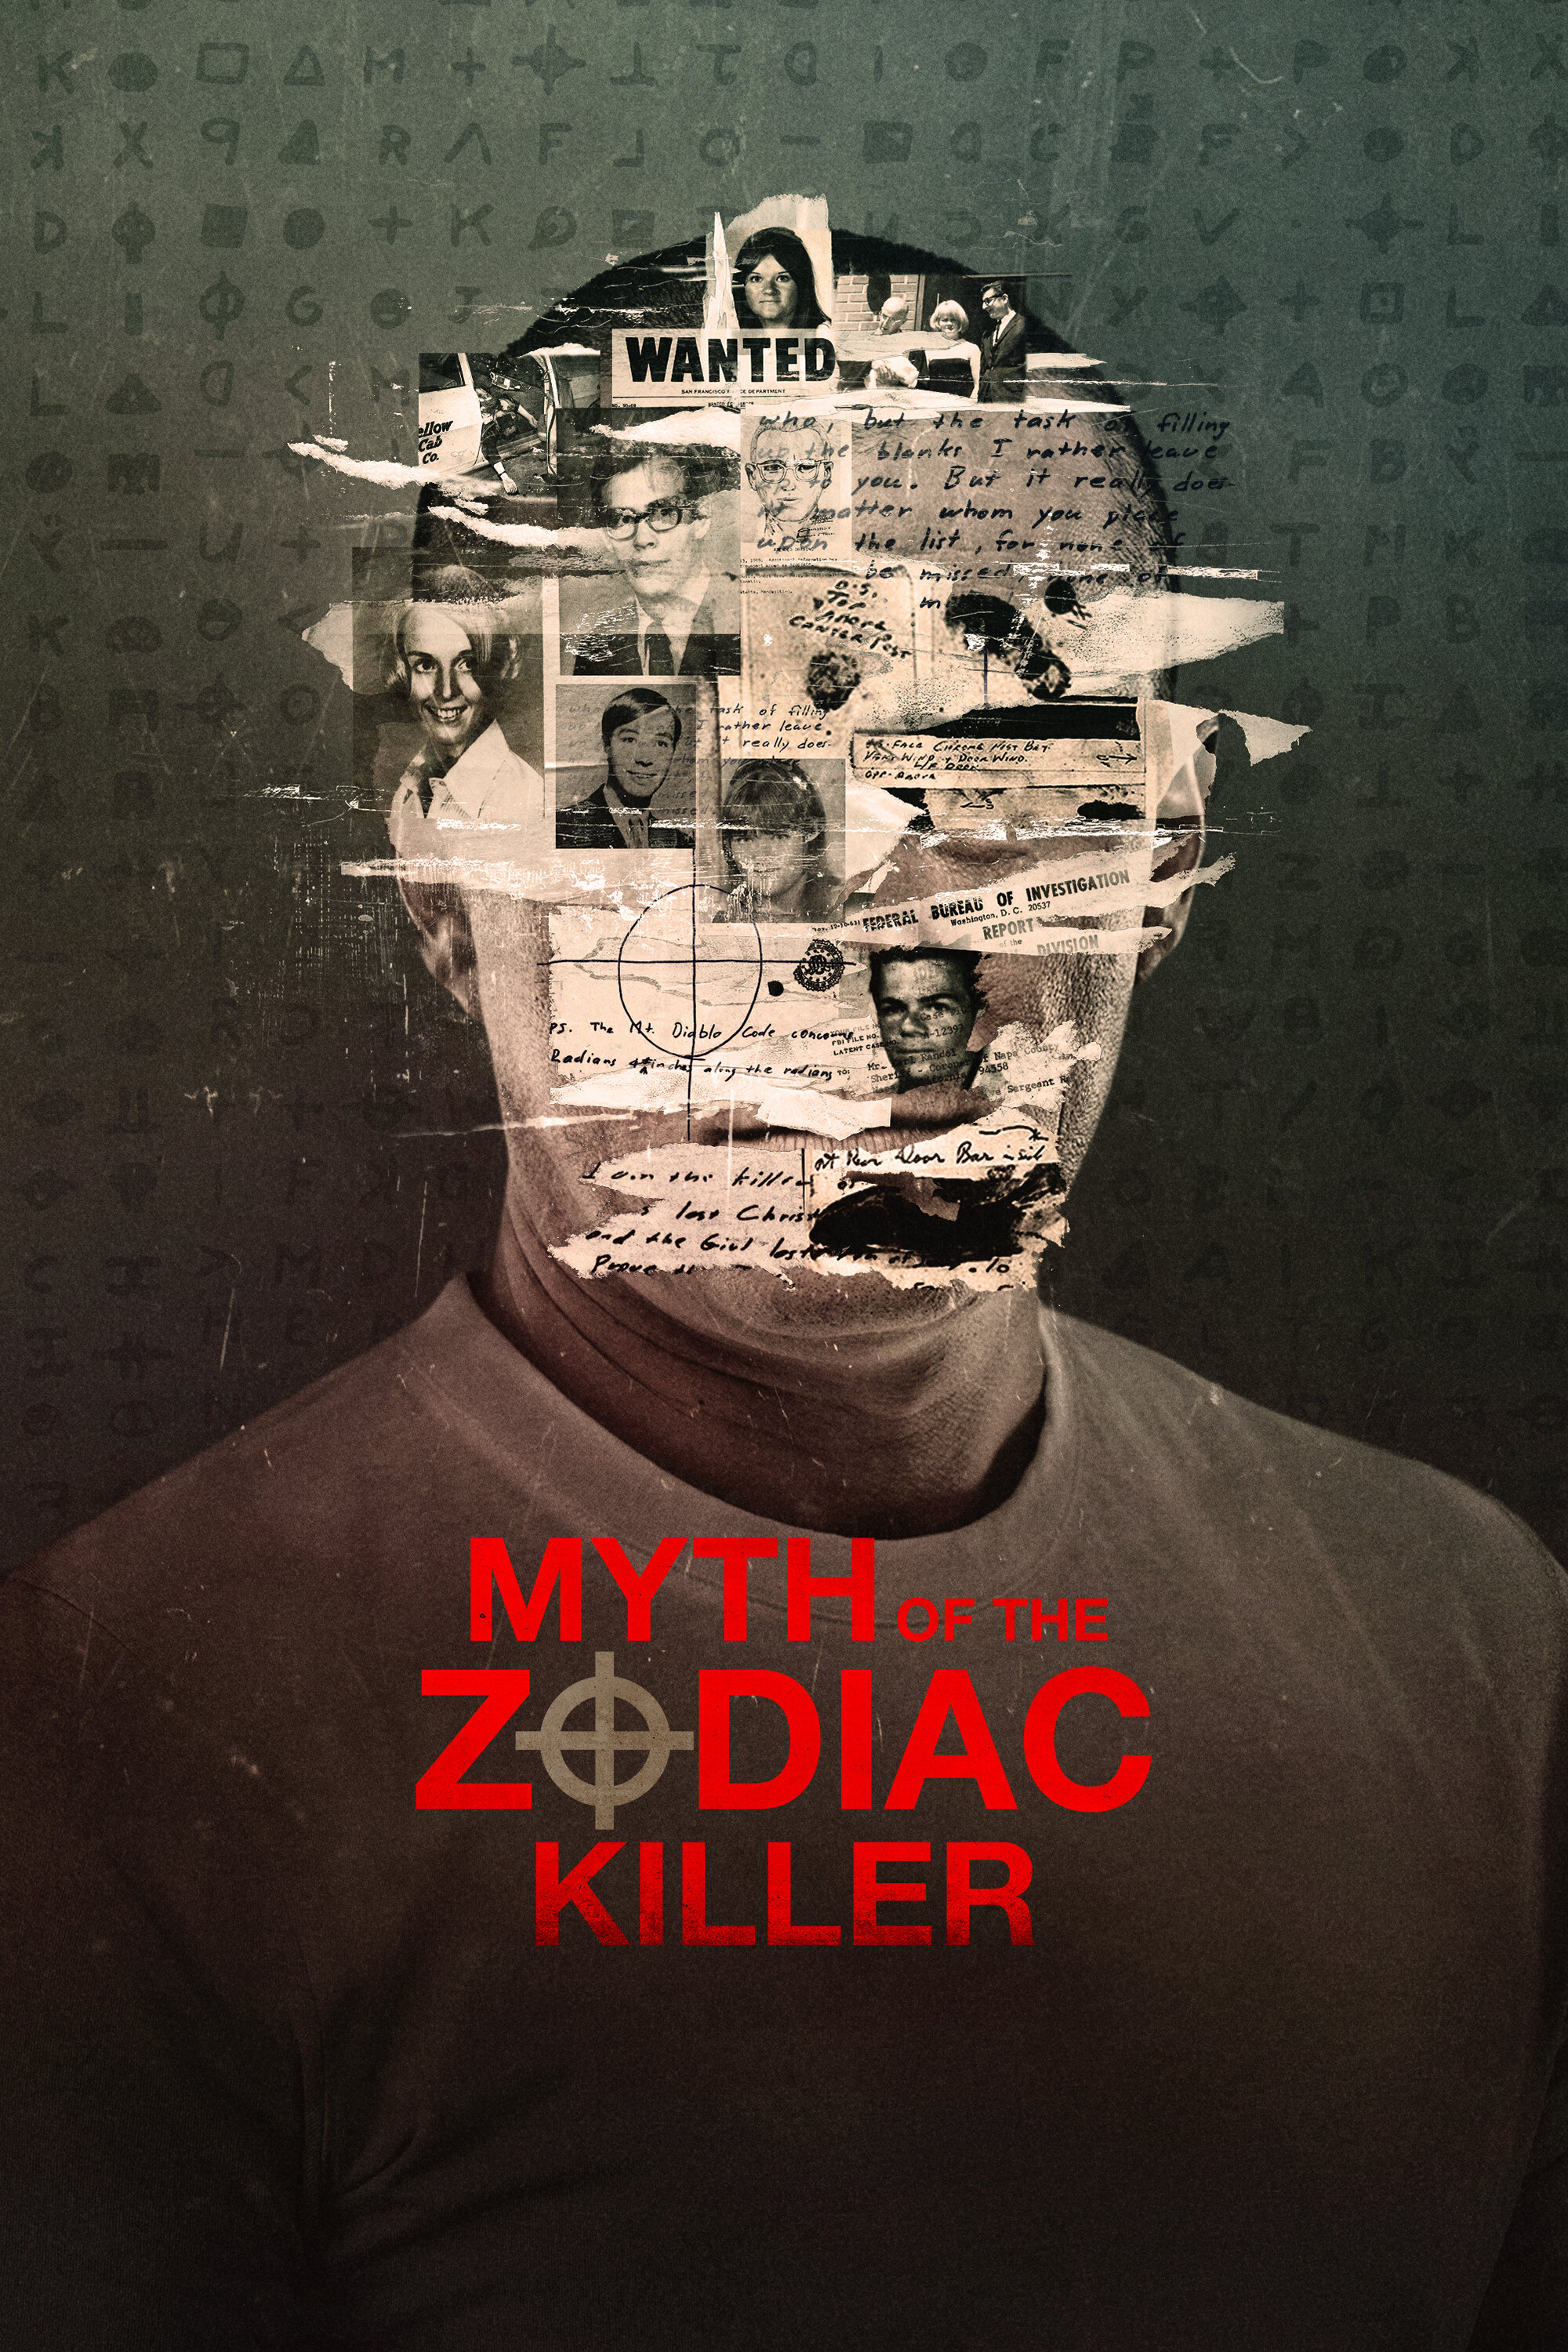 Myth of the Zodiac Killer ne zaman